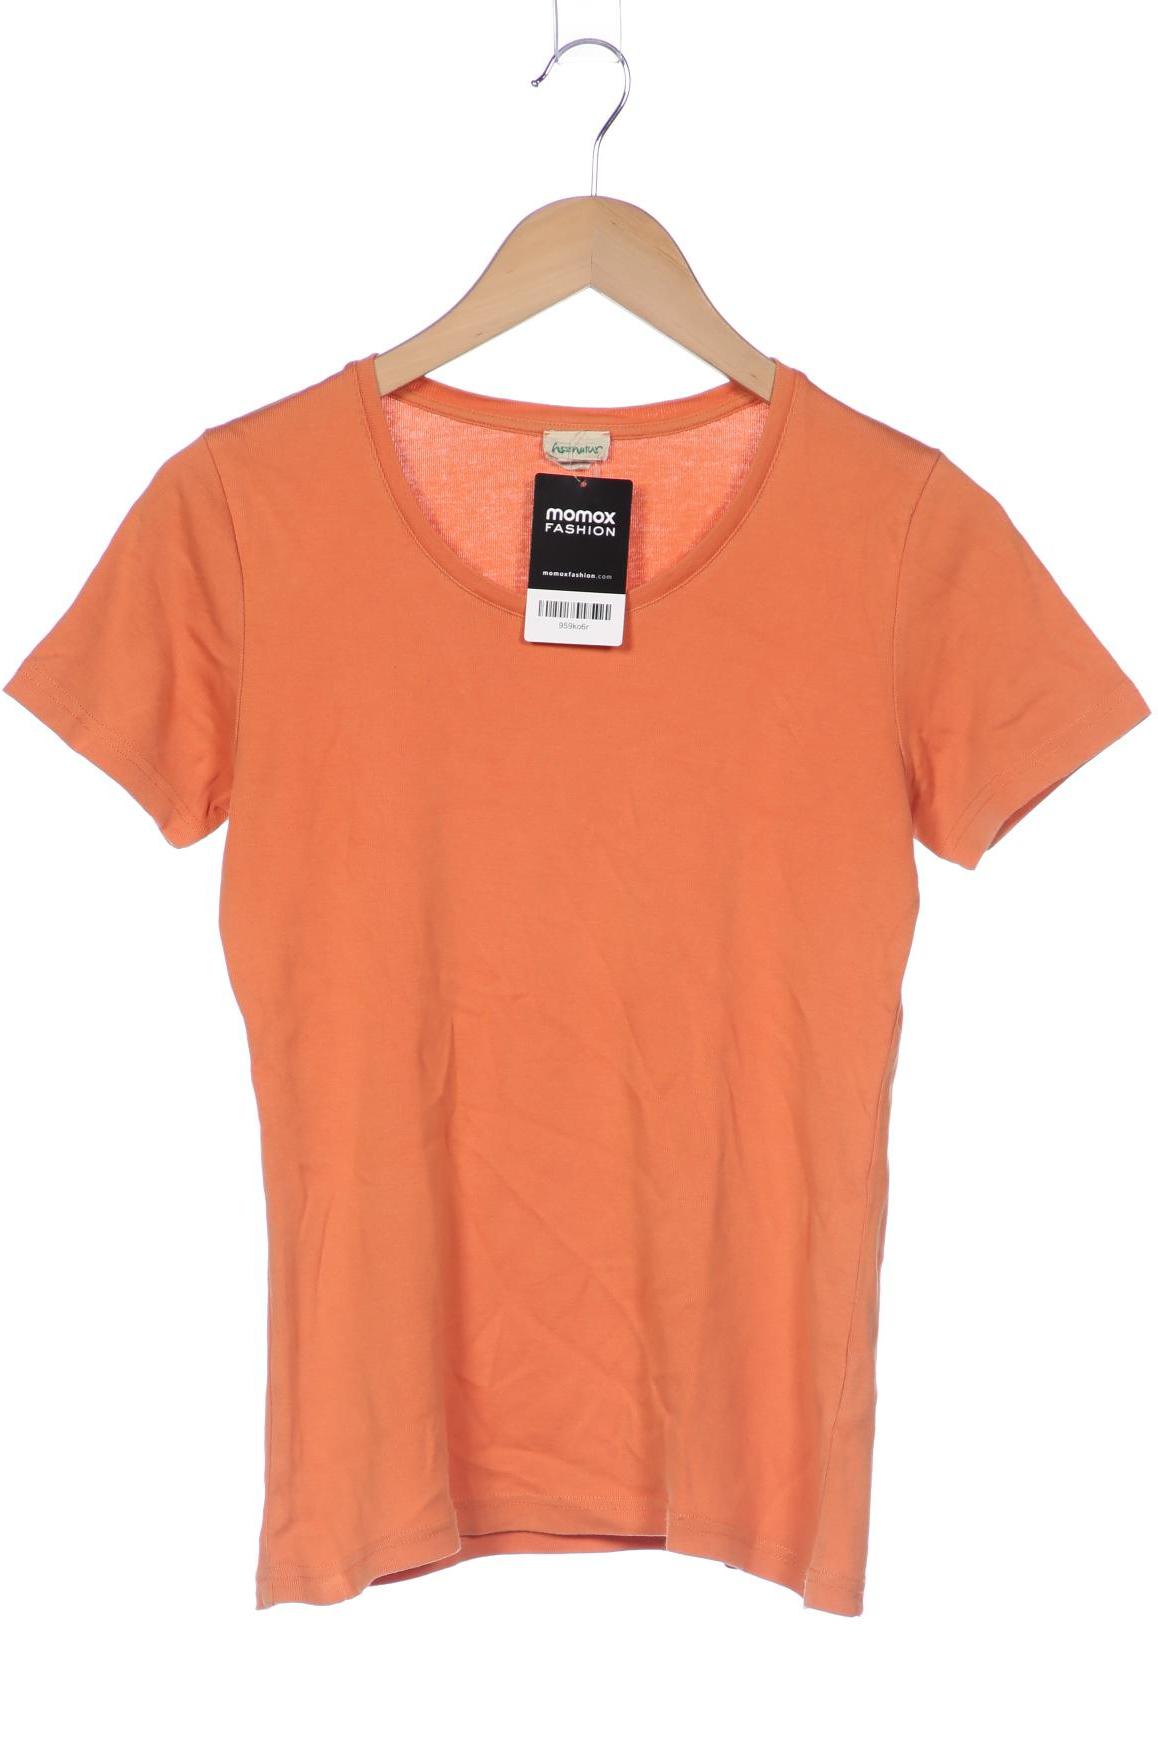 hessnatur Damen T-Shirt, orange von hessnatur